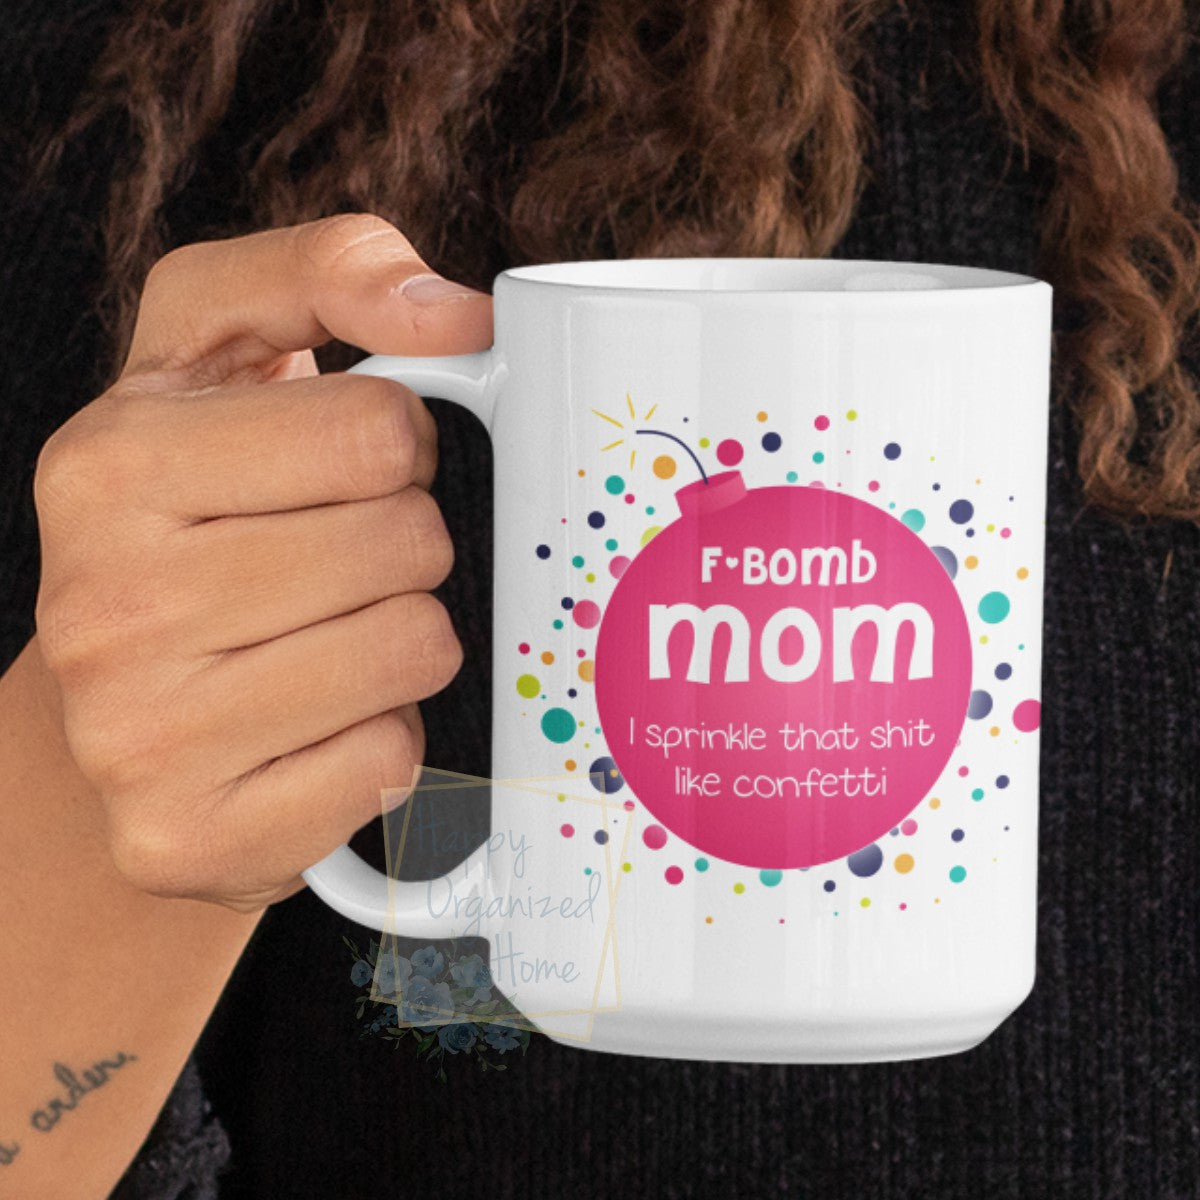 F-Bomb Mom. I sprinkle that Shit like confetti - Coffee Mug  Tea Mug